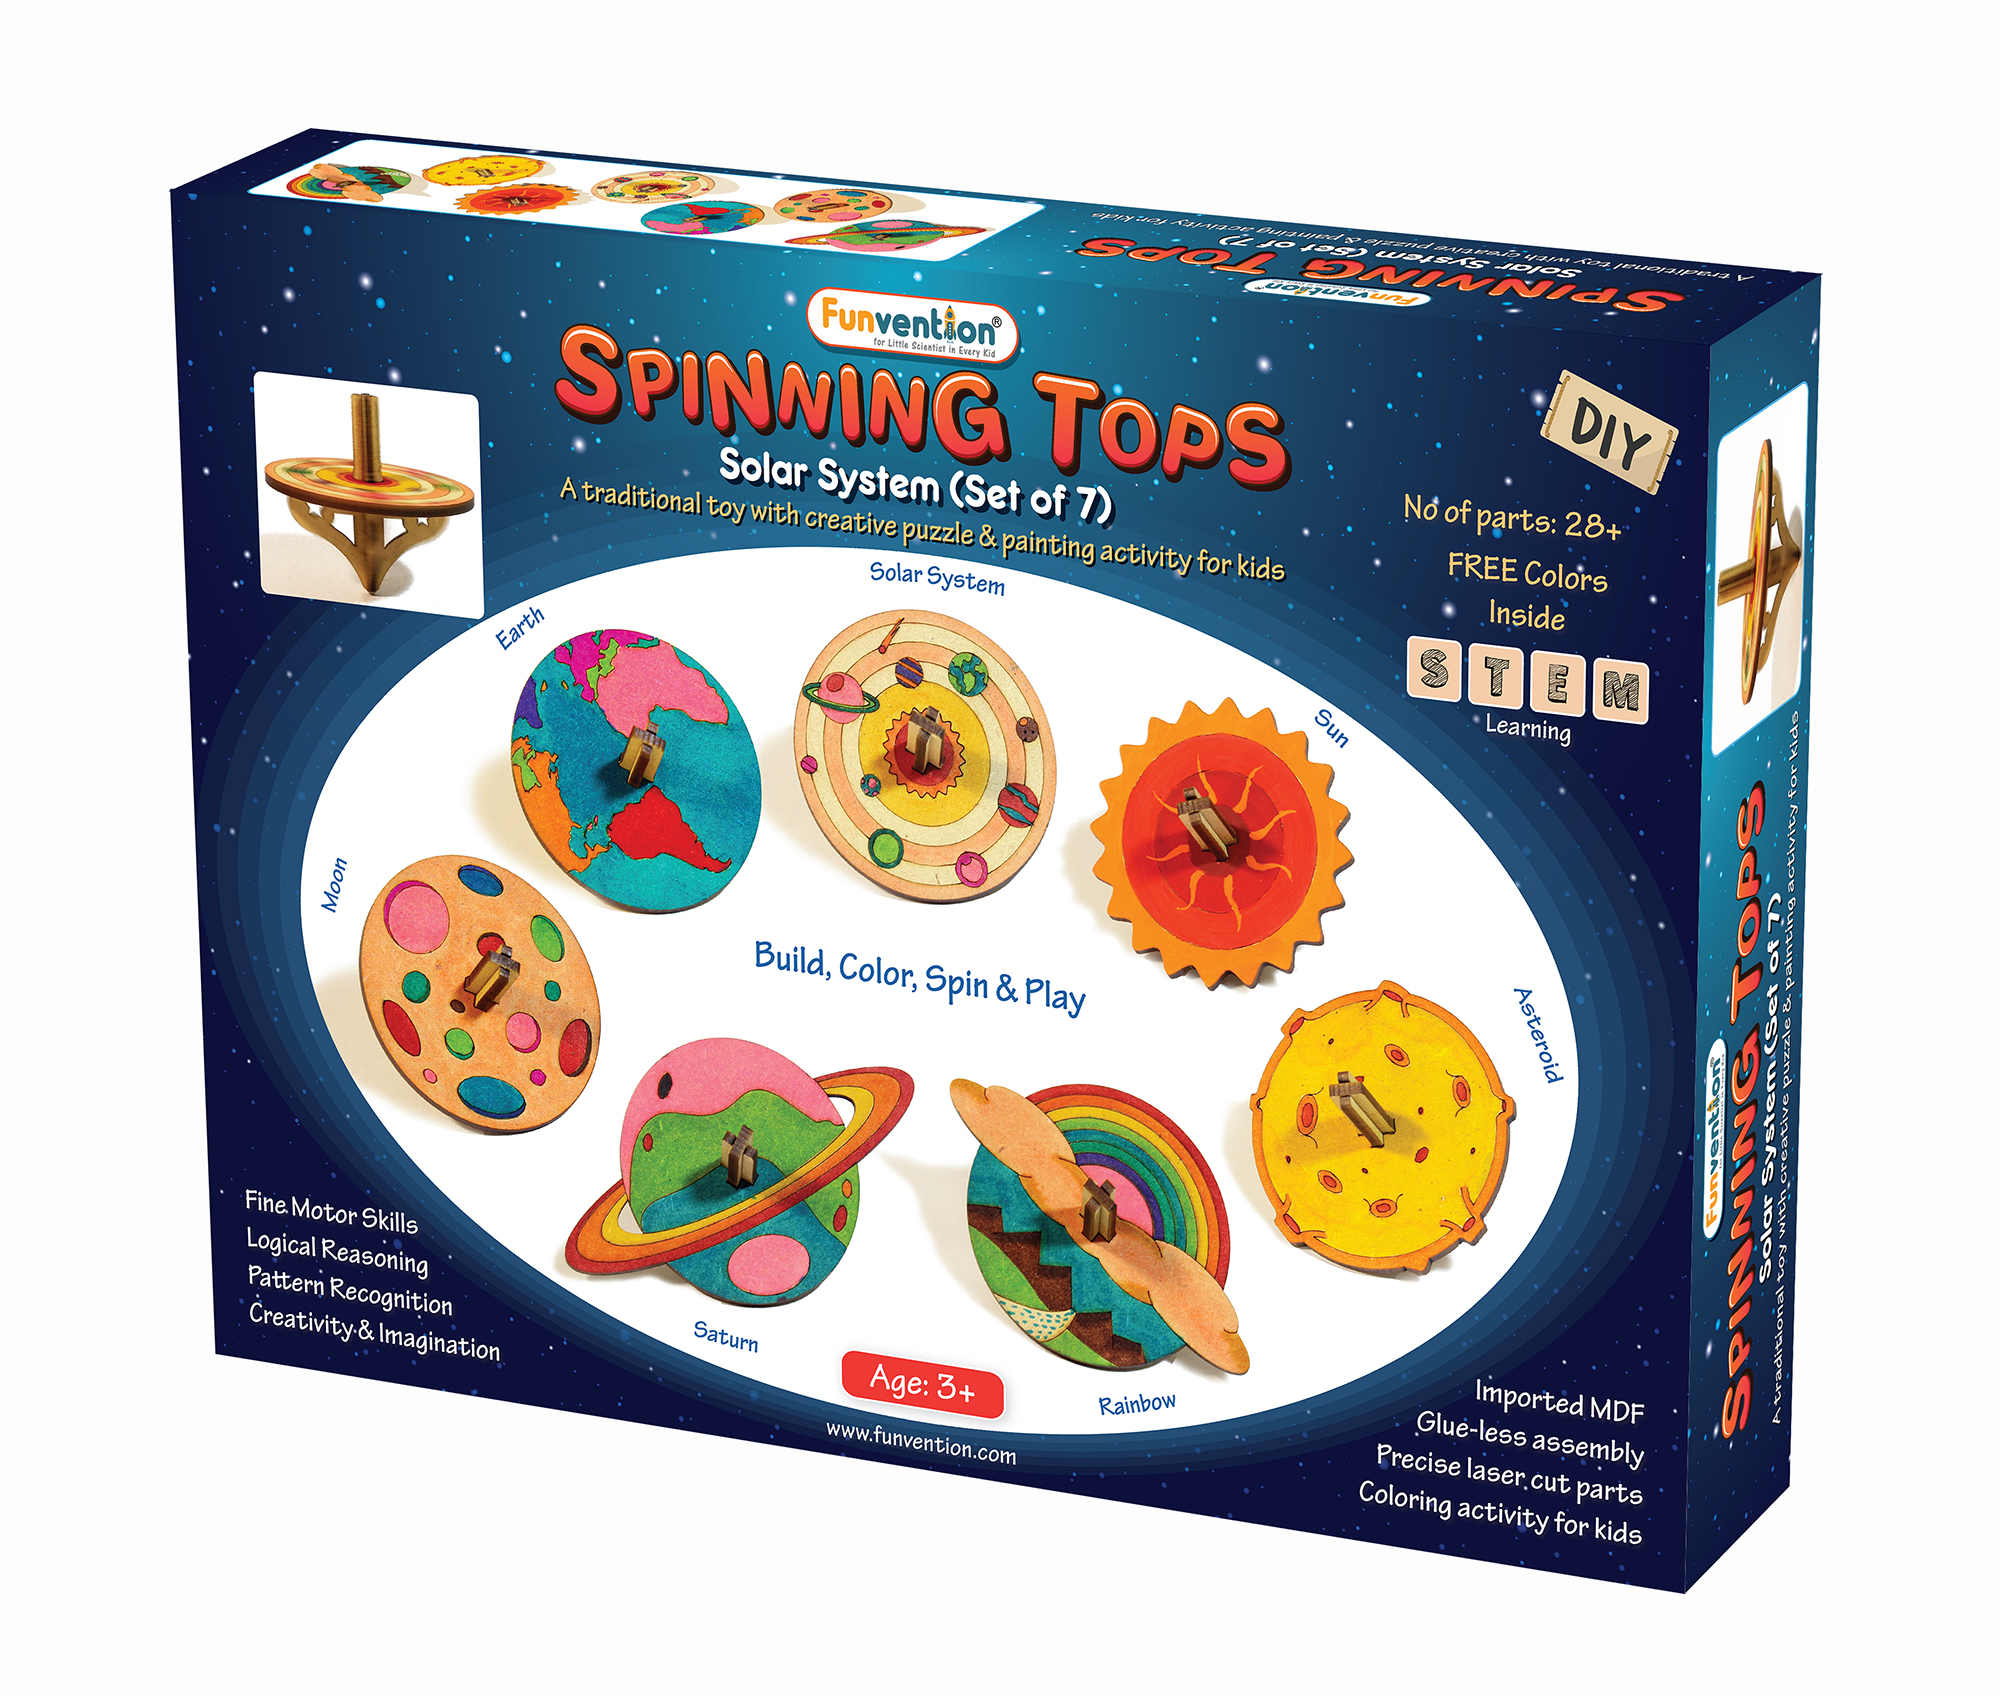 Spinning Tops (Solar System) - Set of 7